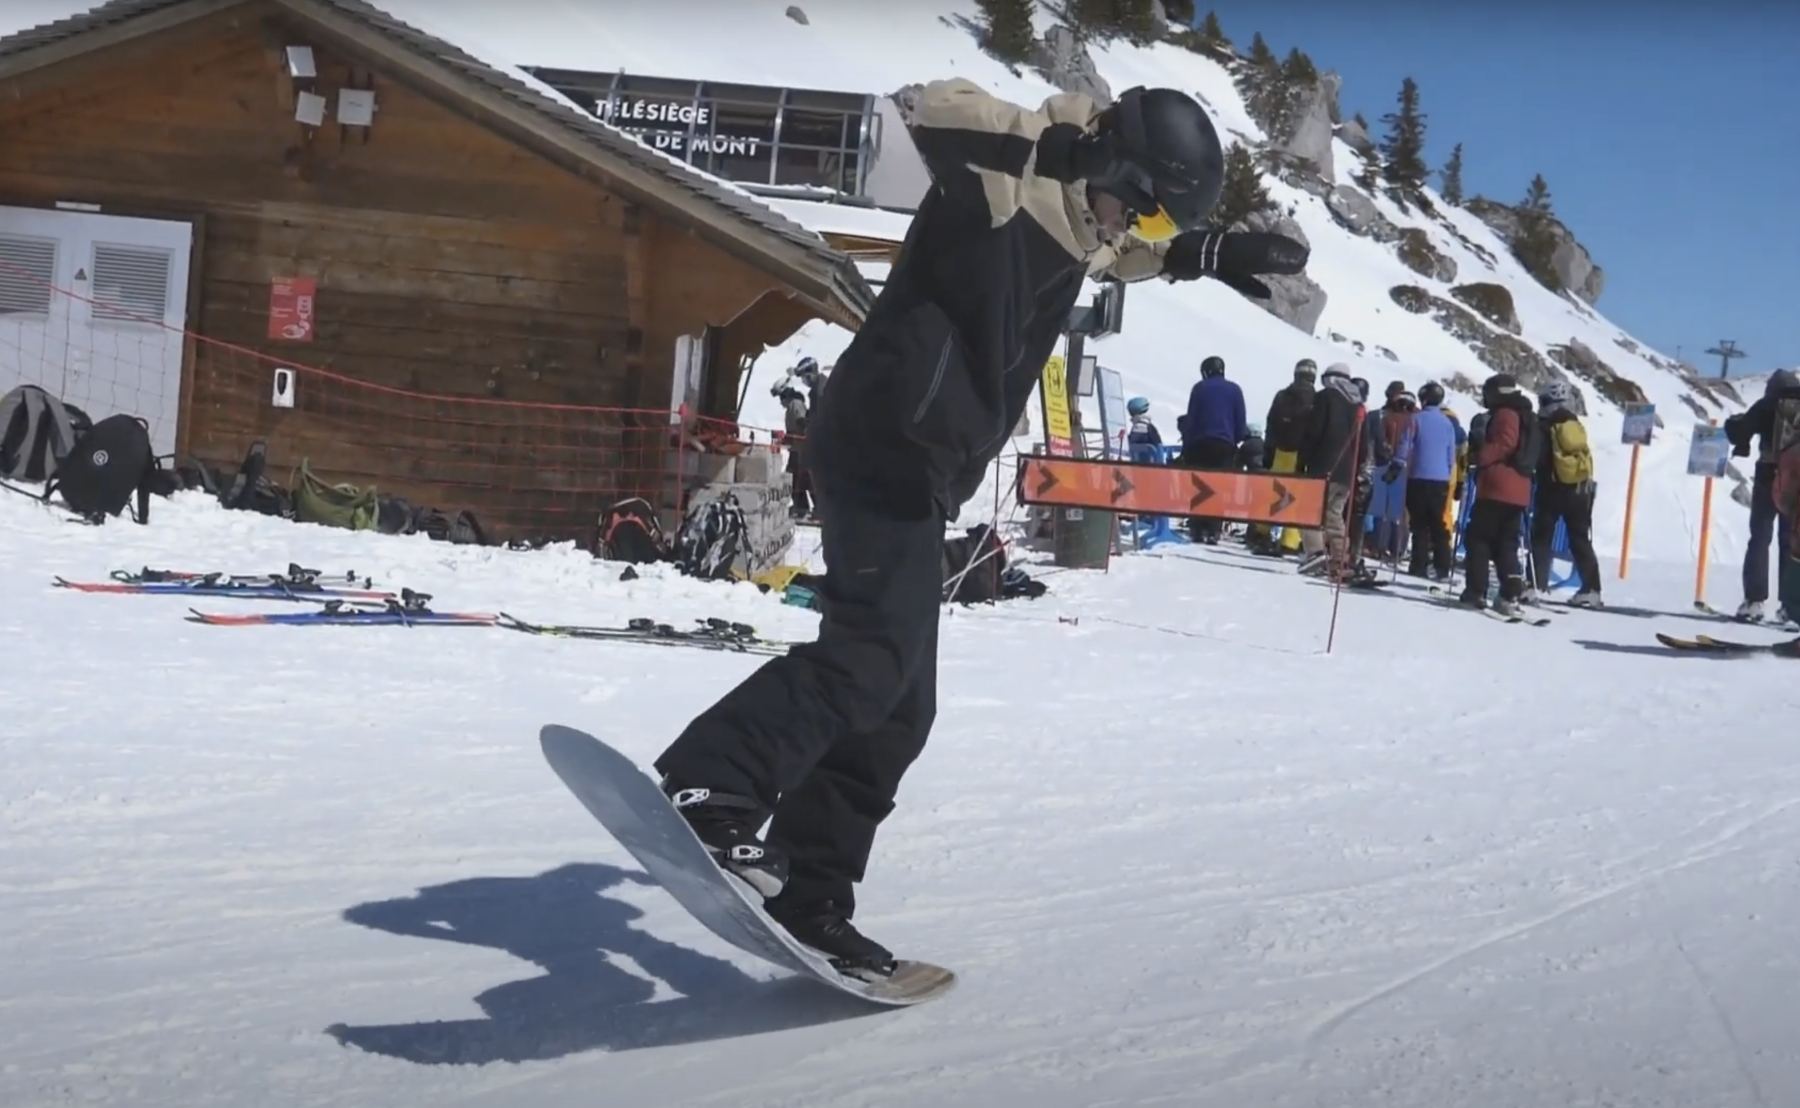 Comment faire un nollie en snowboard ?